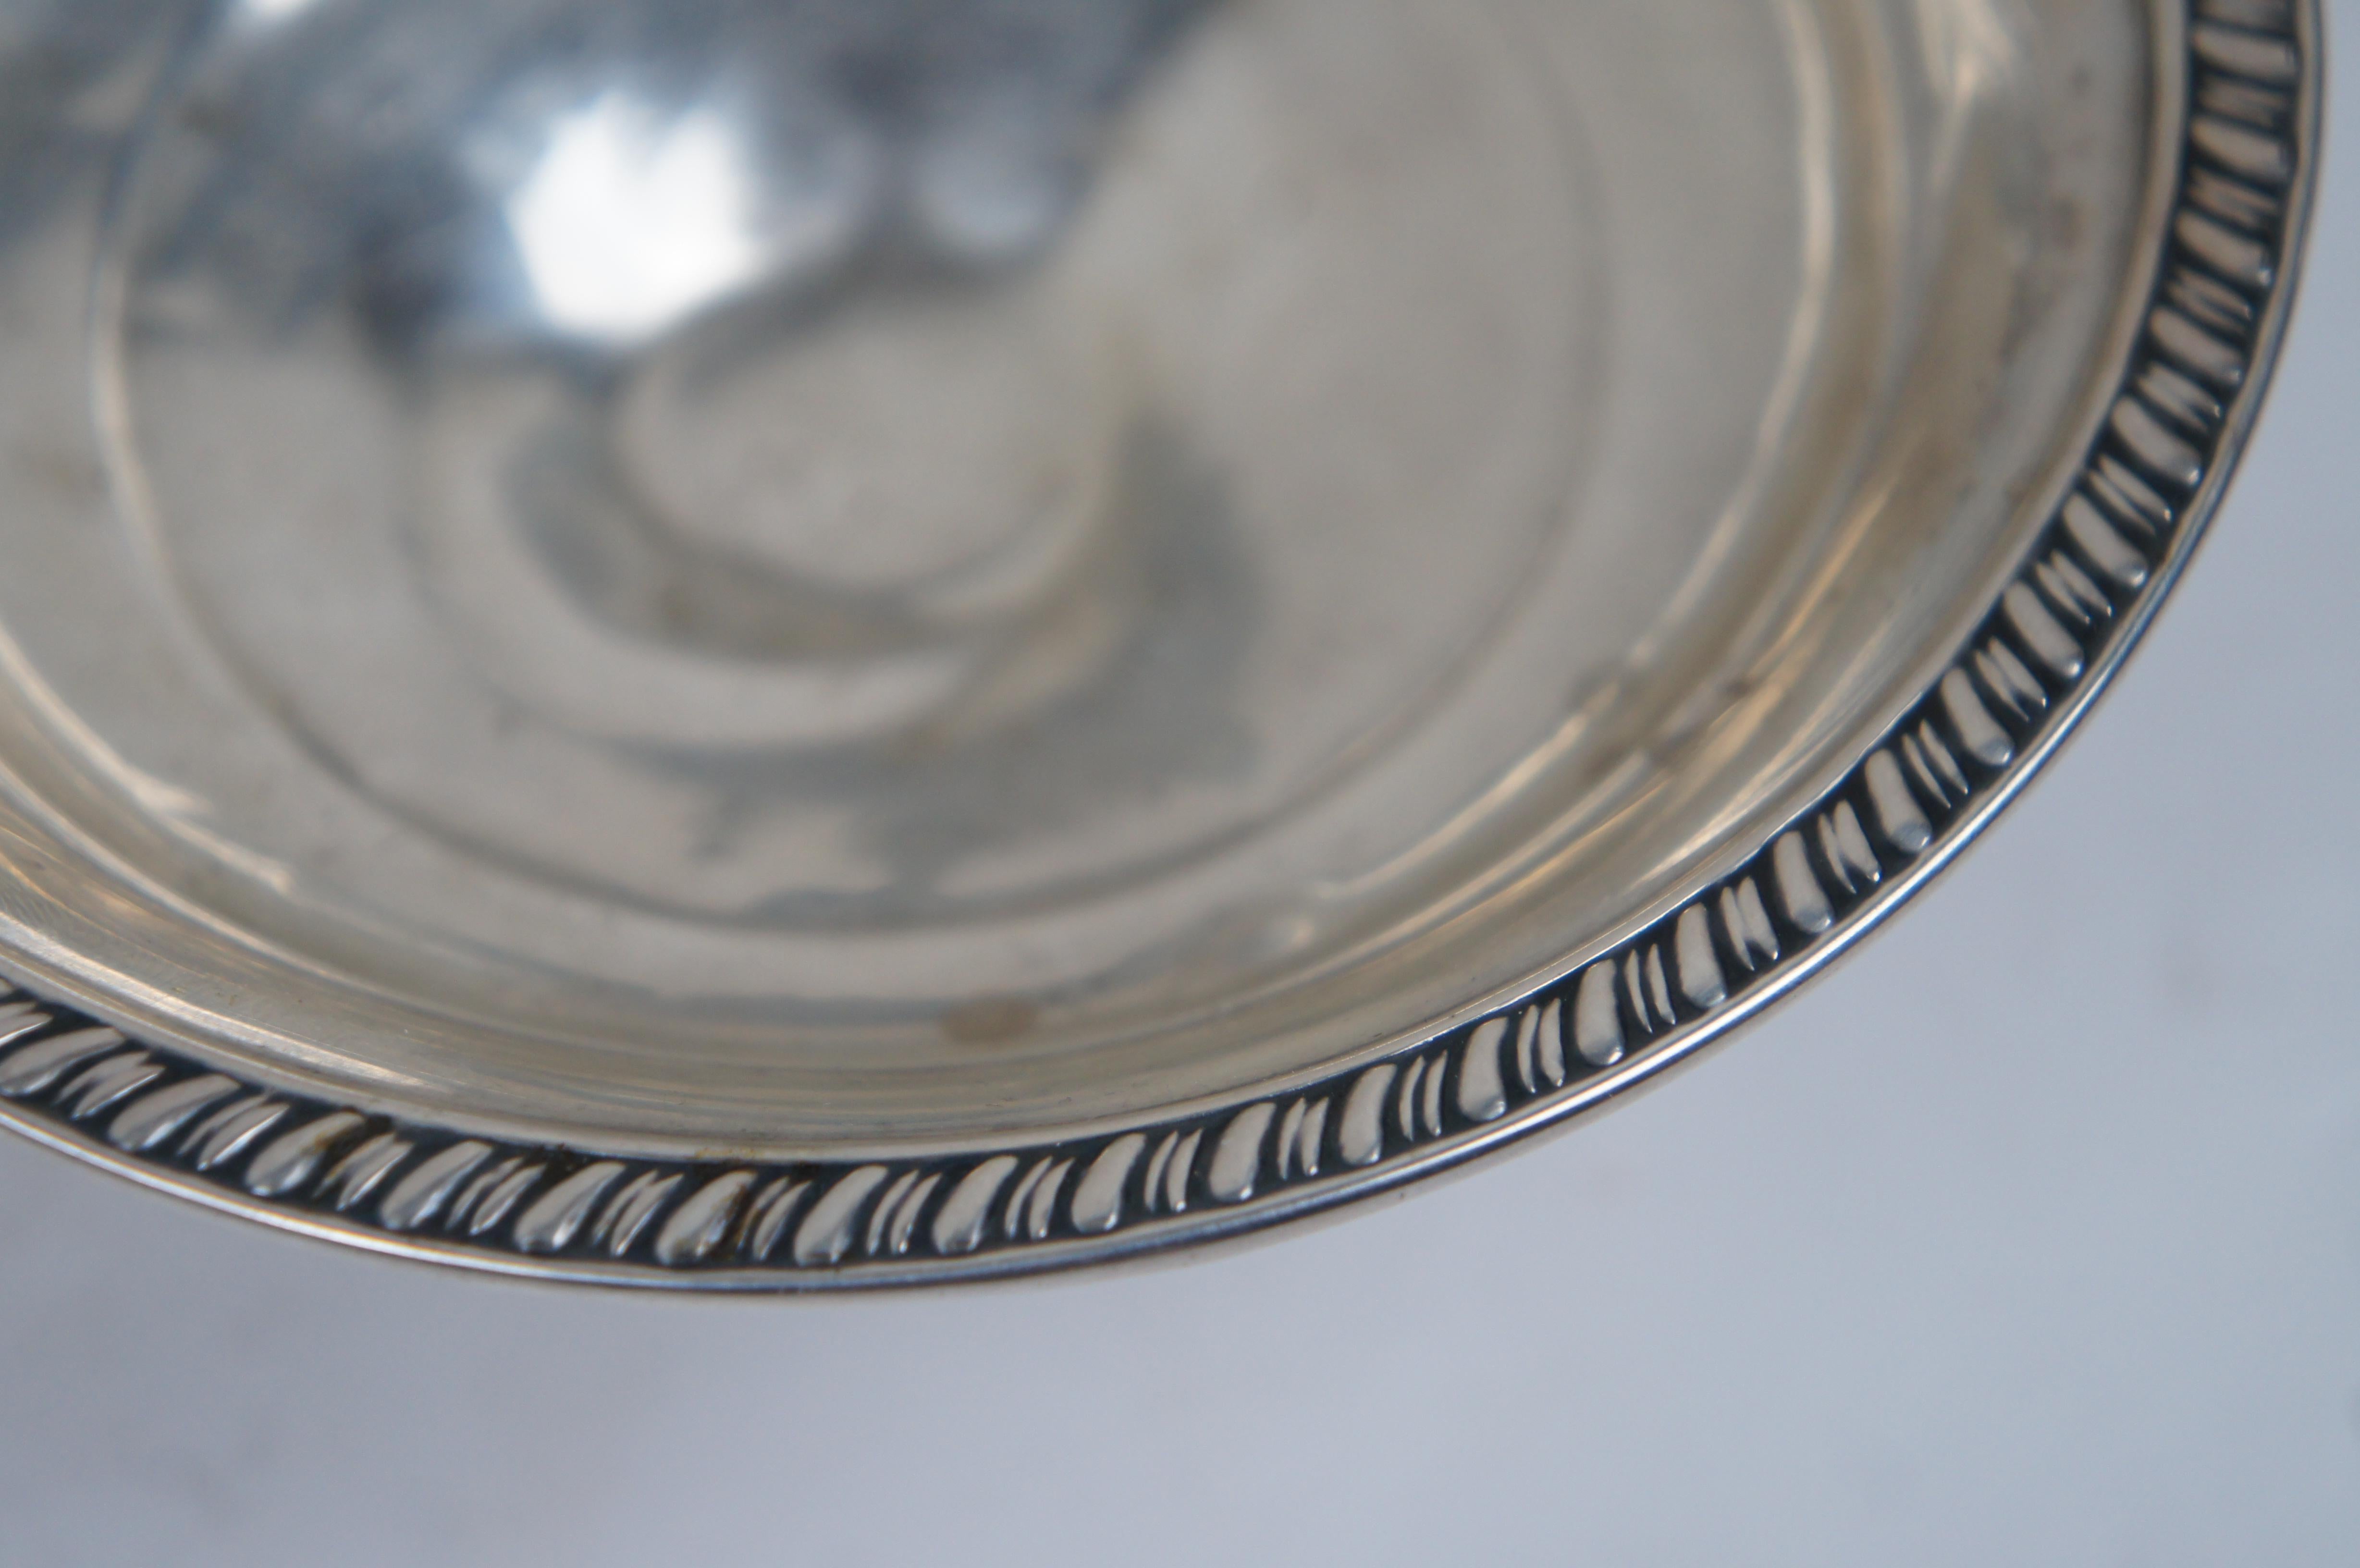 Crown Sterling Silver Footed Pedestal Compote Bon Dish & Salt Shaker 182g 8